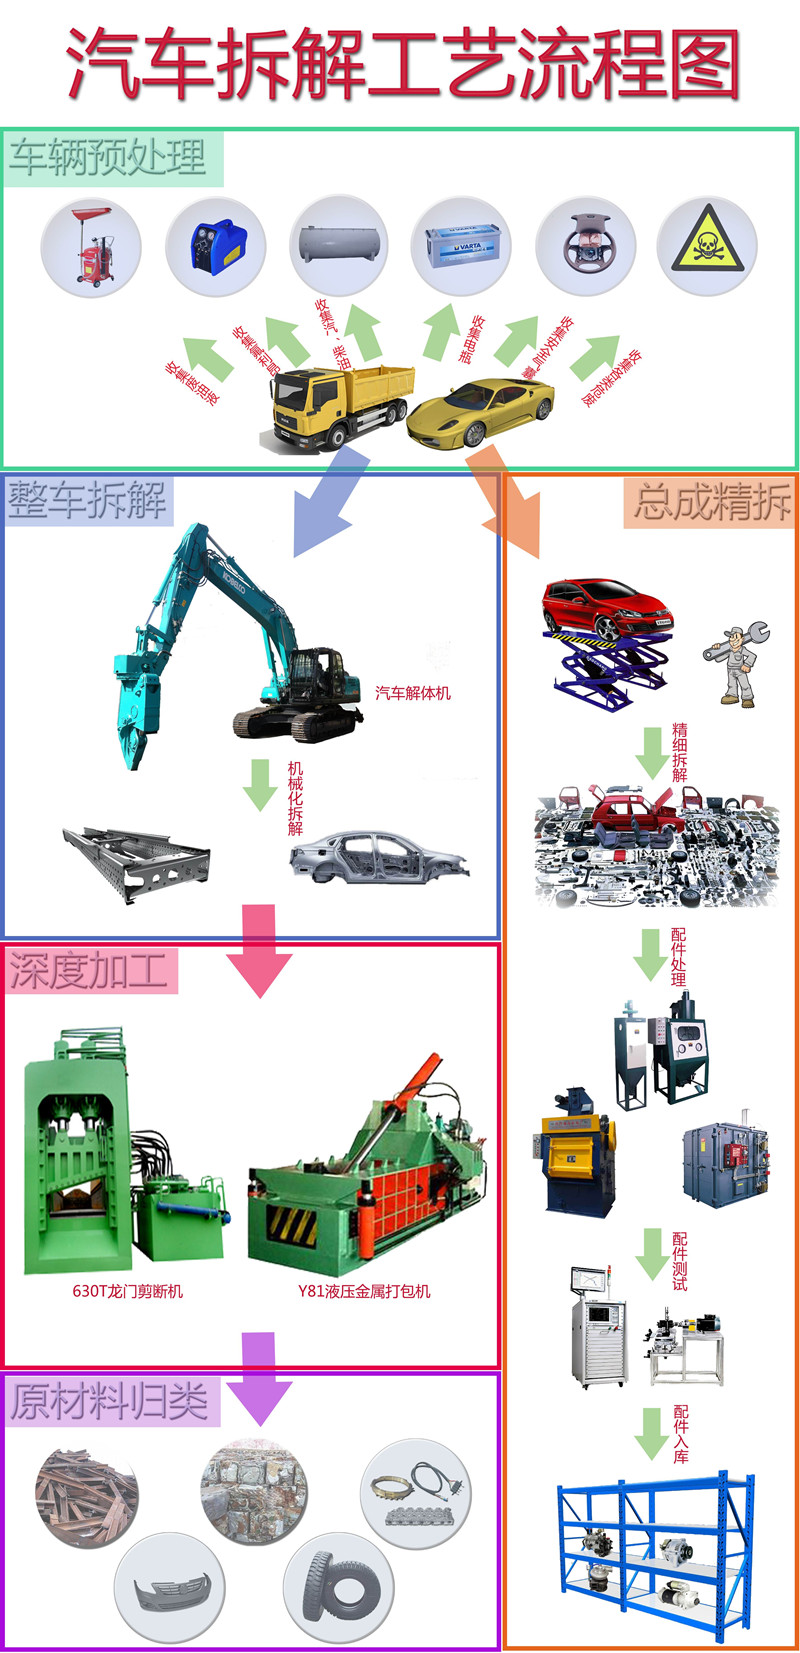 上海拆车流程.jpg